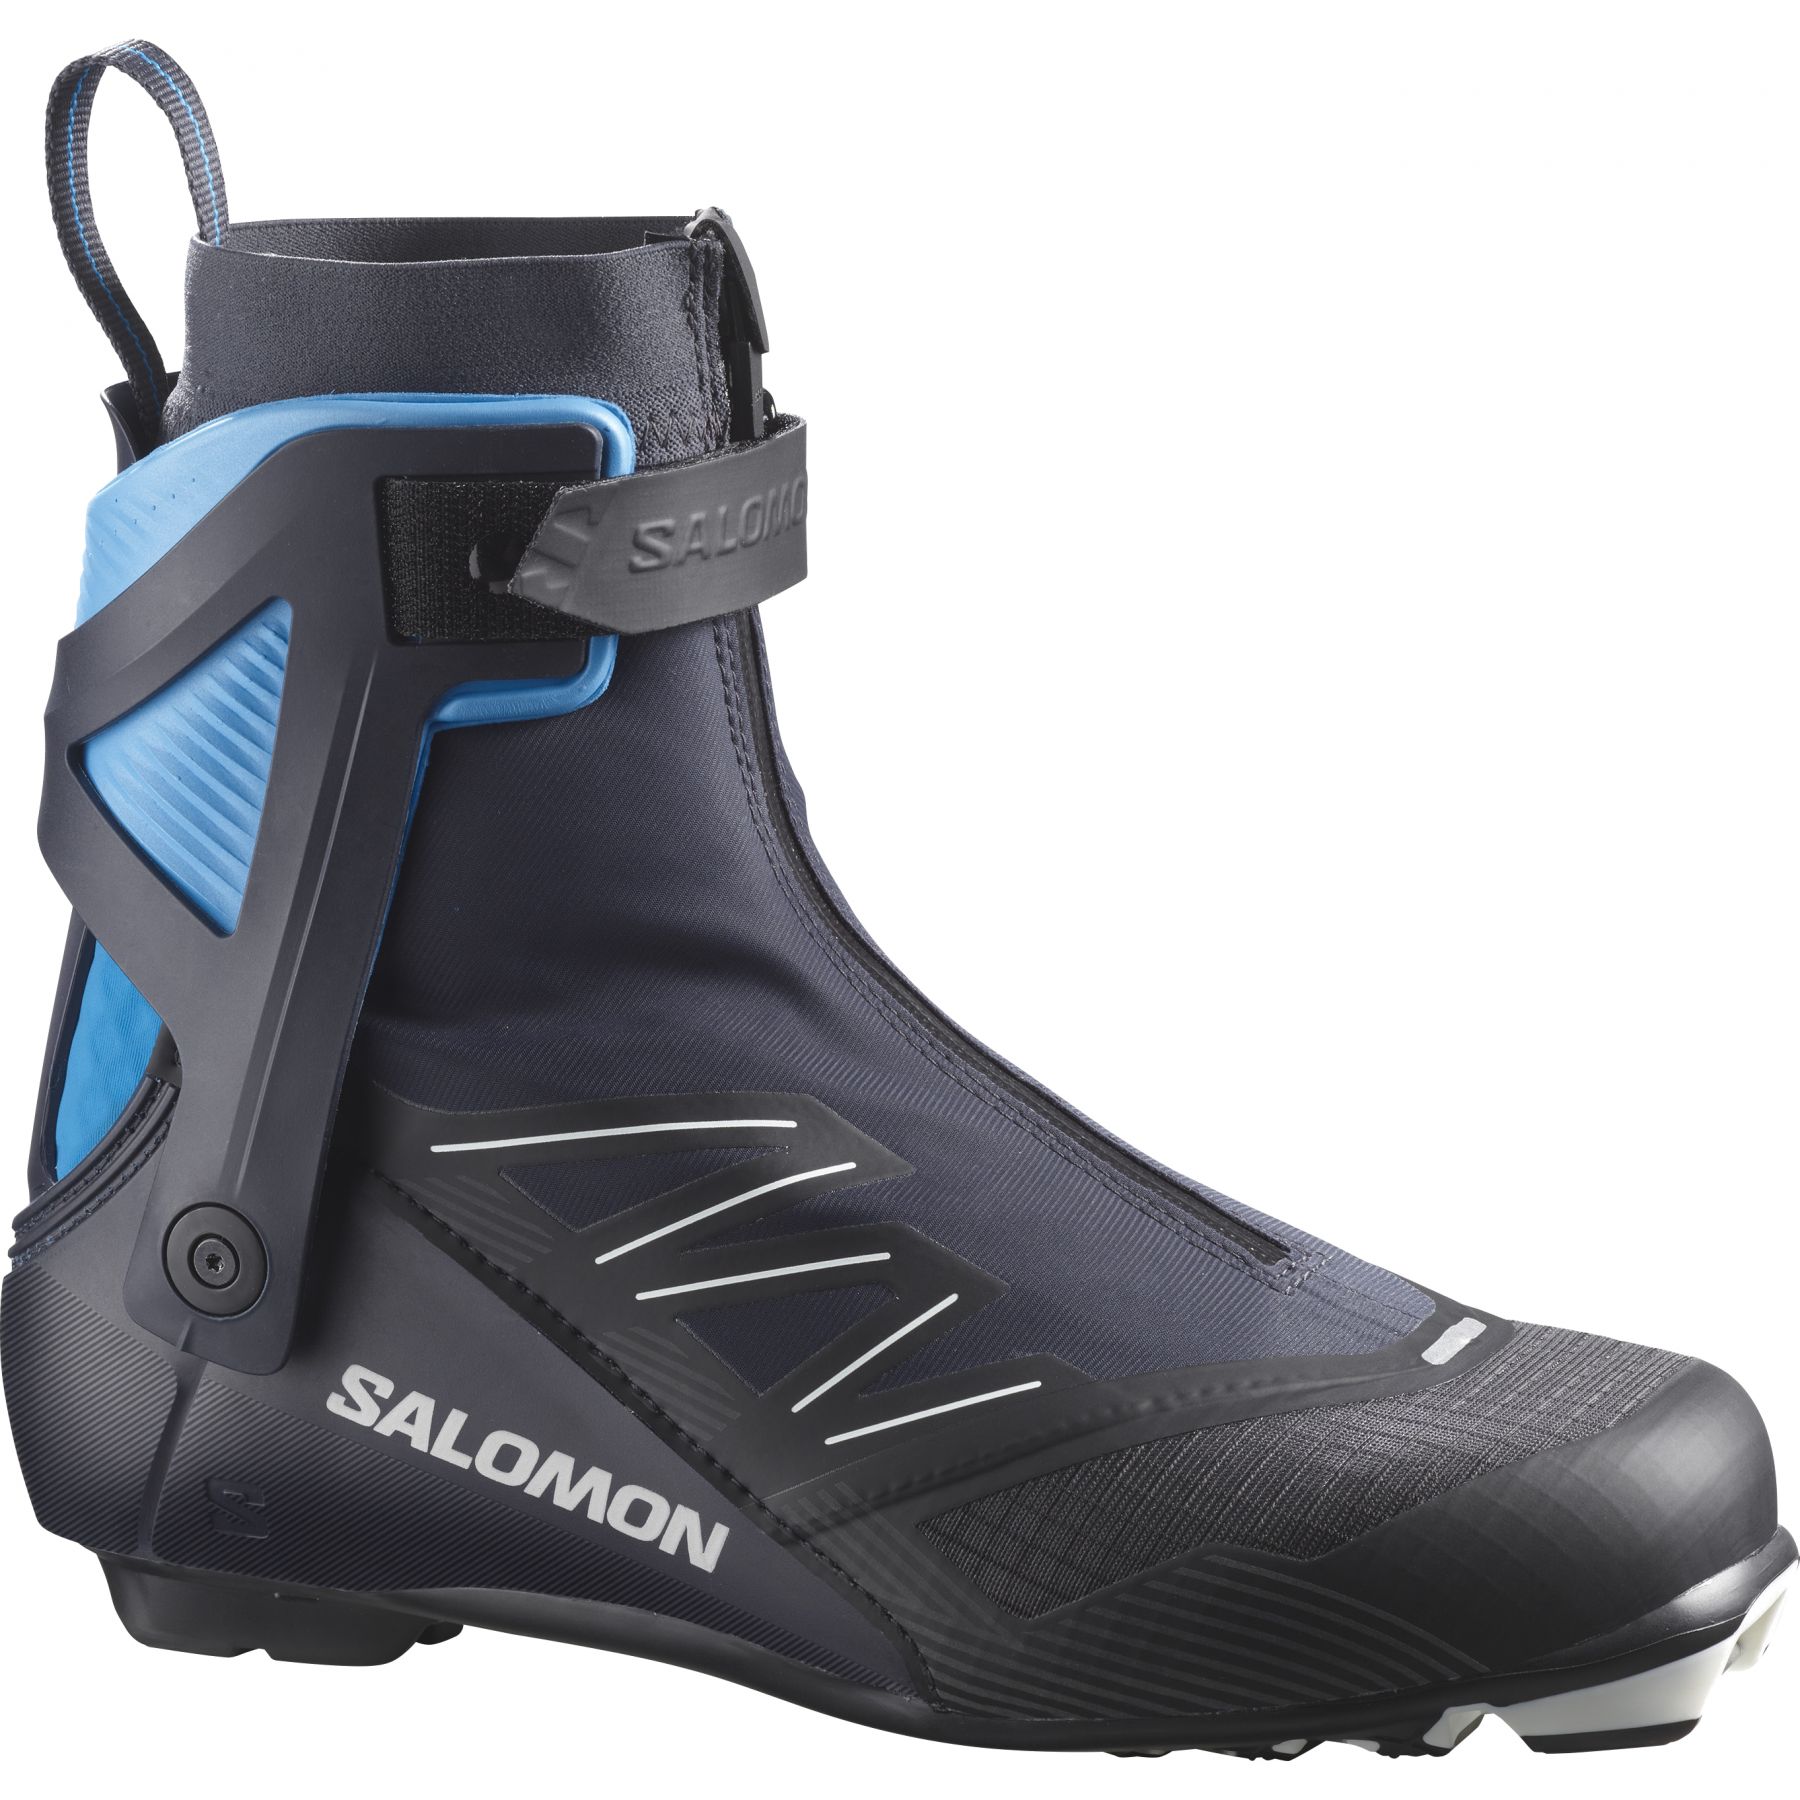 Brug Salomon RS8 Prolink, langrendsstøvler, herre, mørkeblå til en forbedret oplevelse